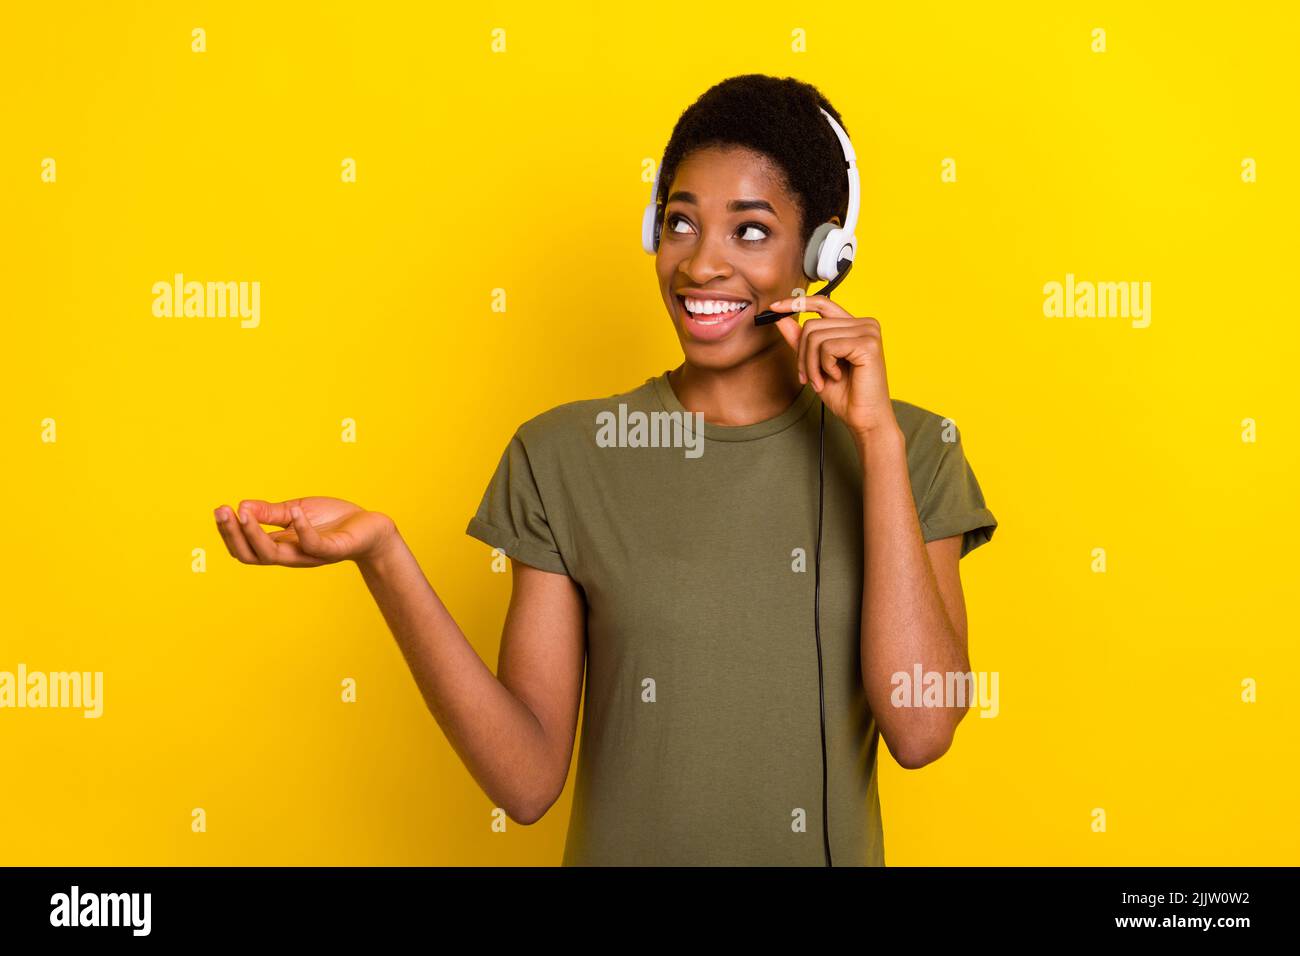 Portrait de la personne positive communiquer parler micro isolé sur fond jaune Banque D'Images